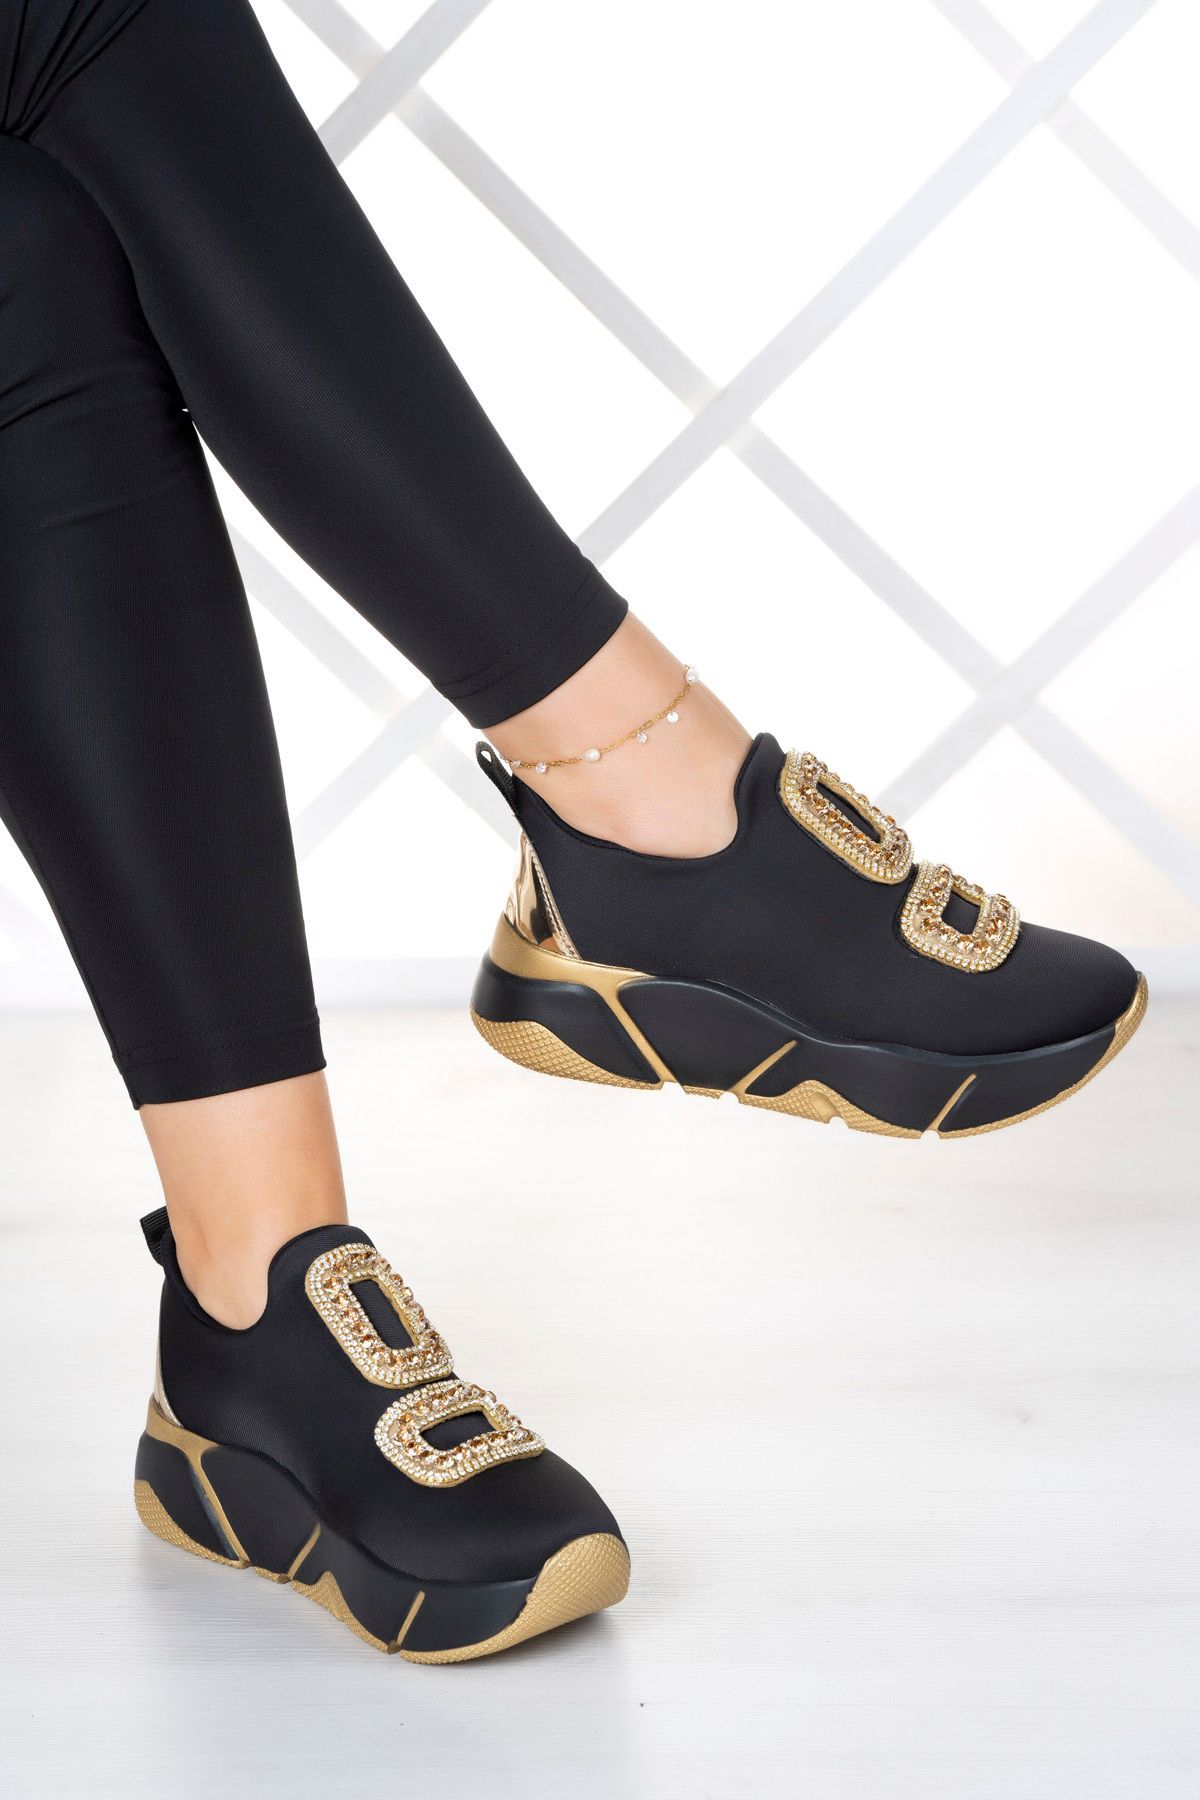 Erkan Saçmacı Almendra Altın Streç Taşlı Detaylı Kadın Spor Ayakkabı Soft Sole